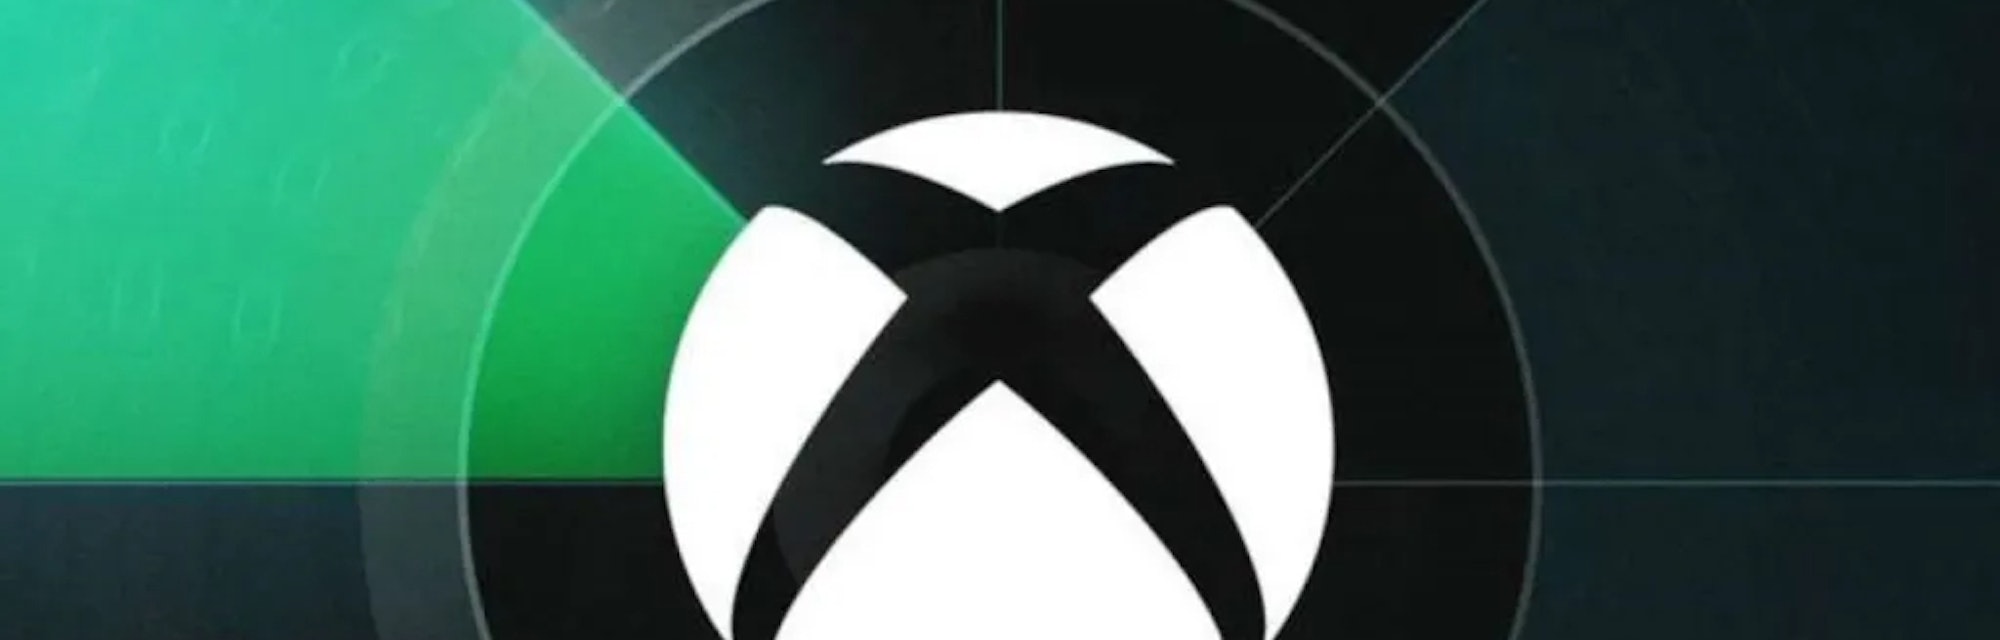 Xbox Gamescom 2021